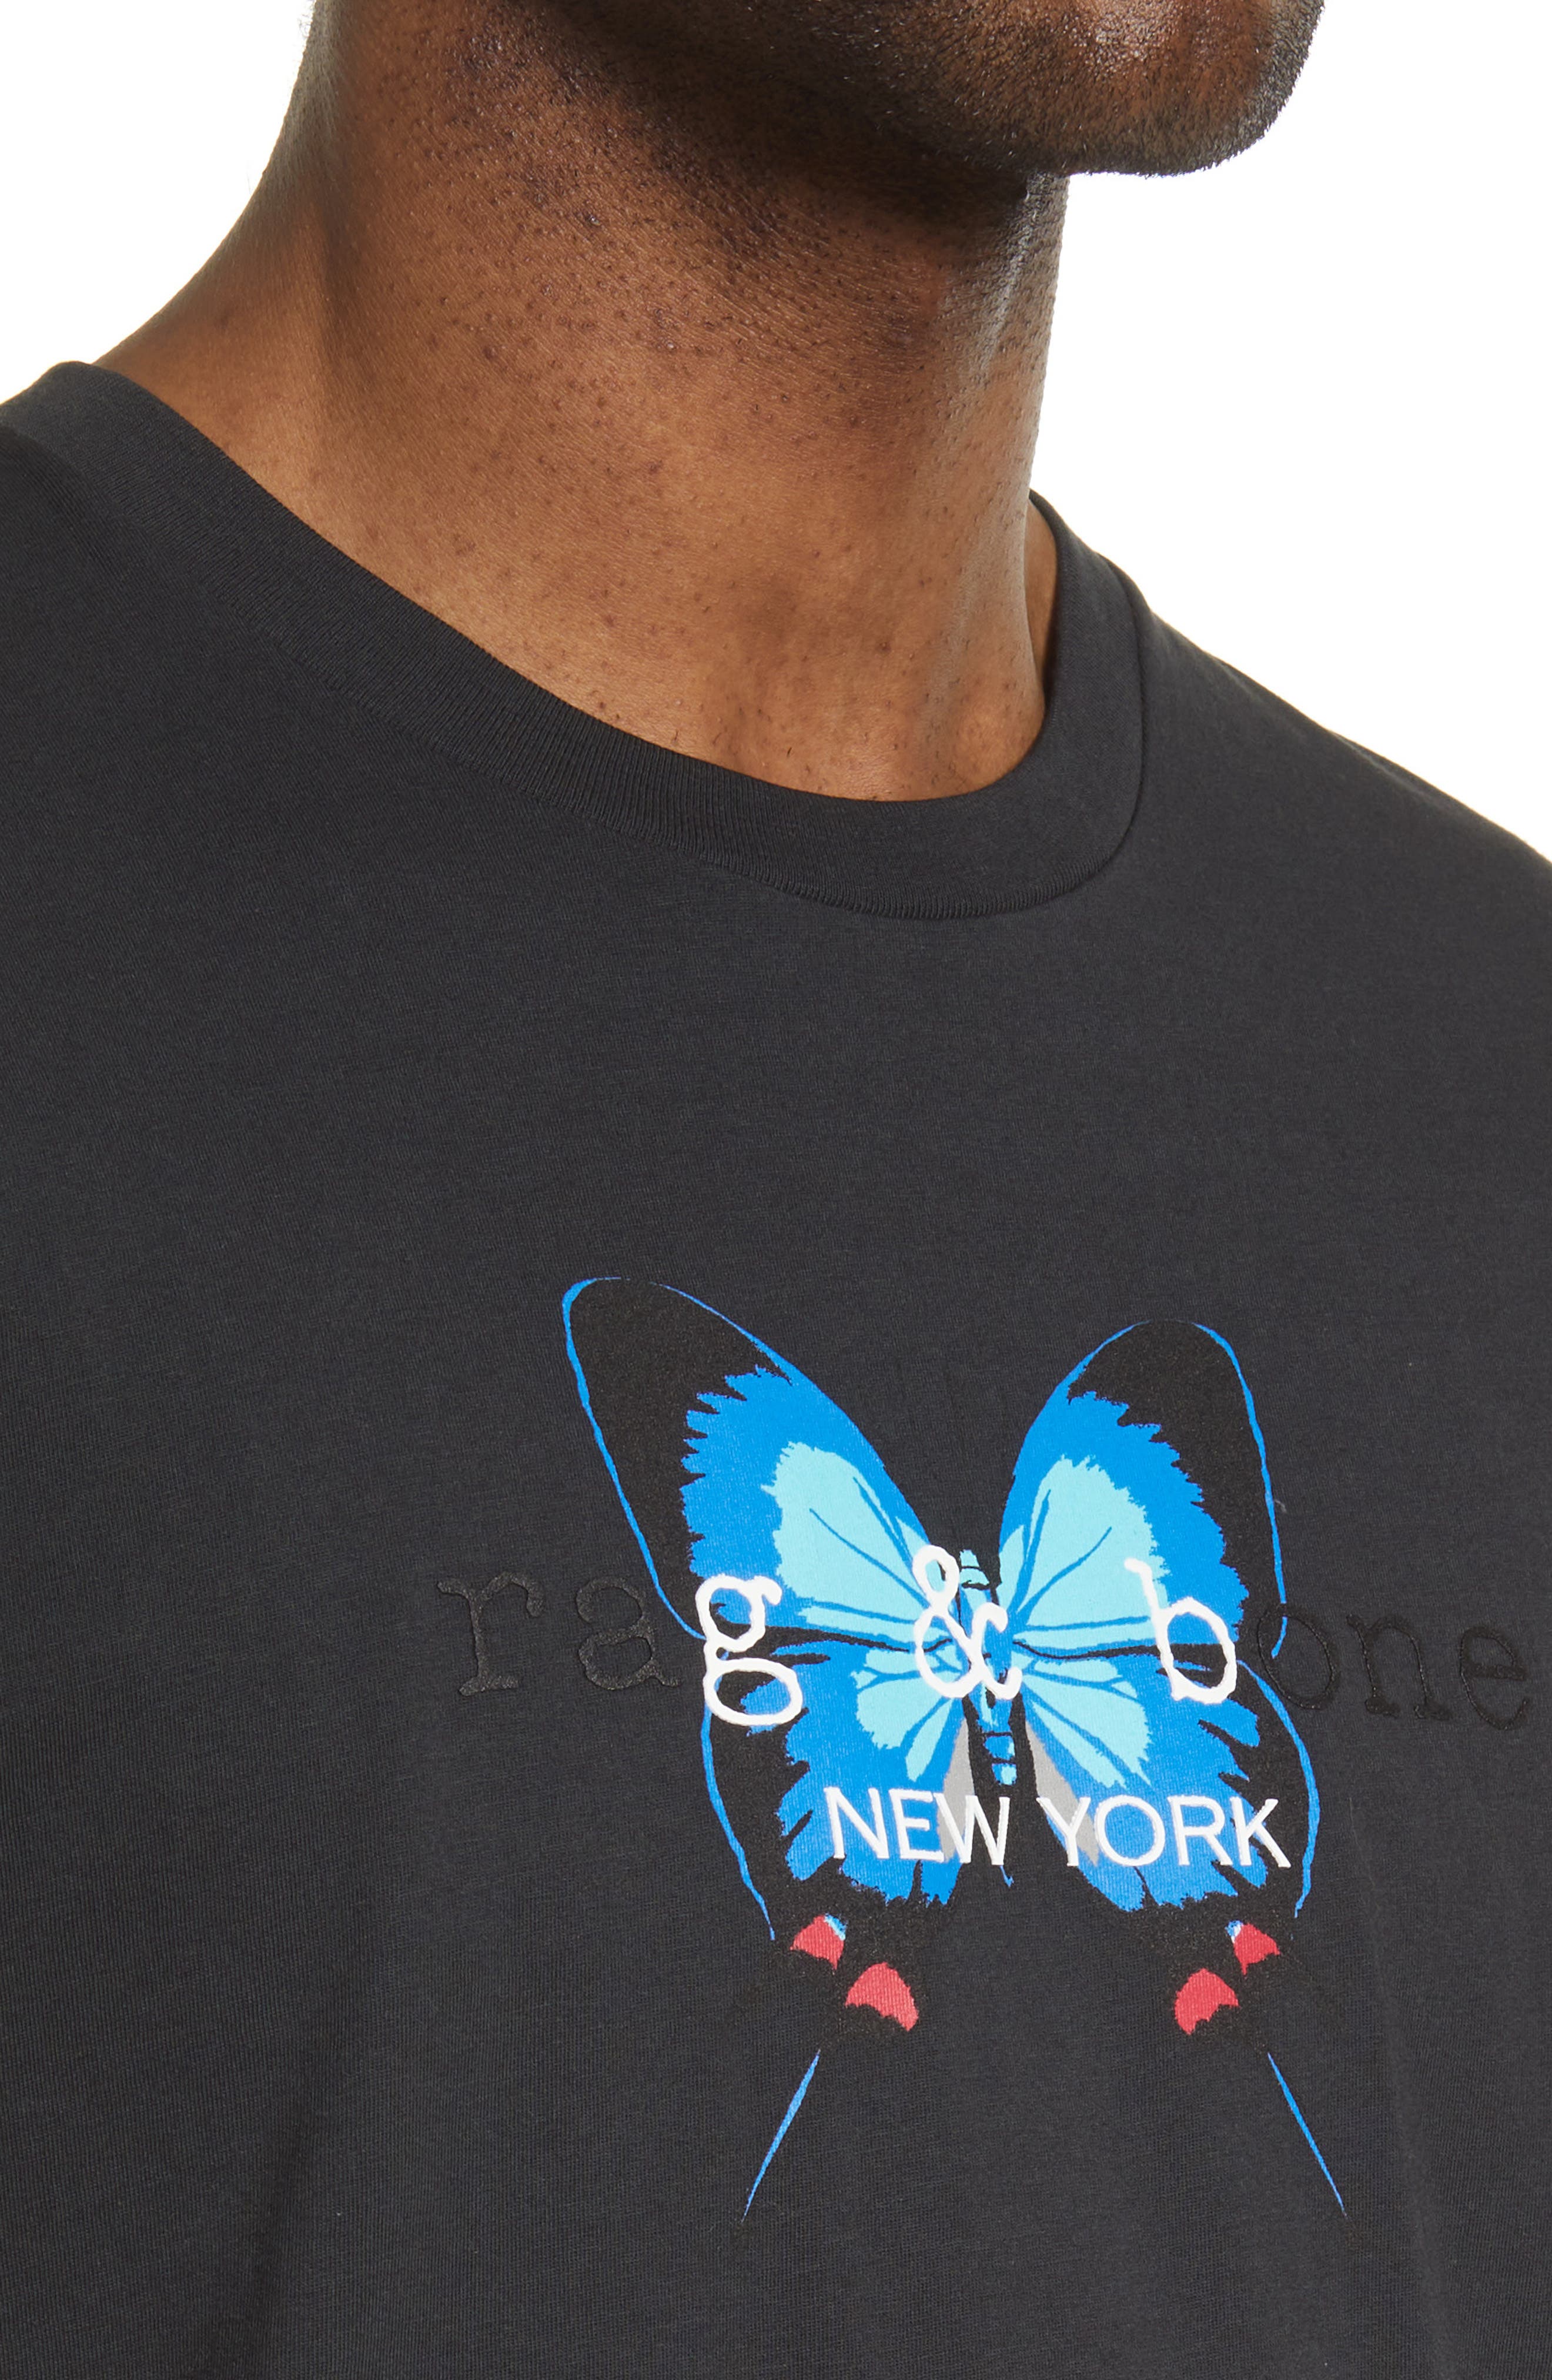 Butterfly Embroidered Adult UNISEX T-shirt Women T-shirt, Men T-Shirt